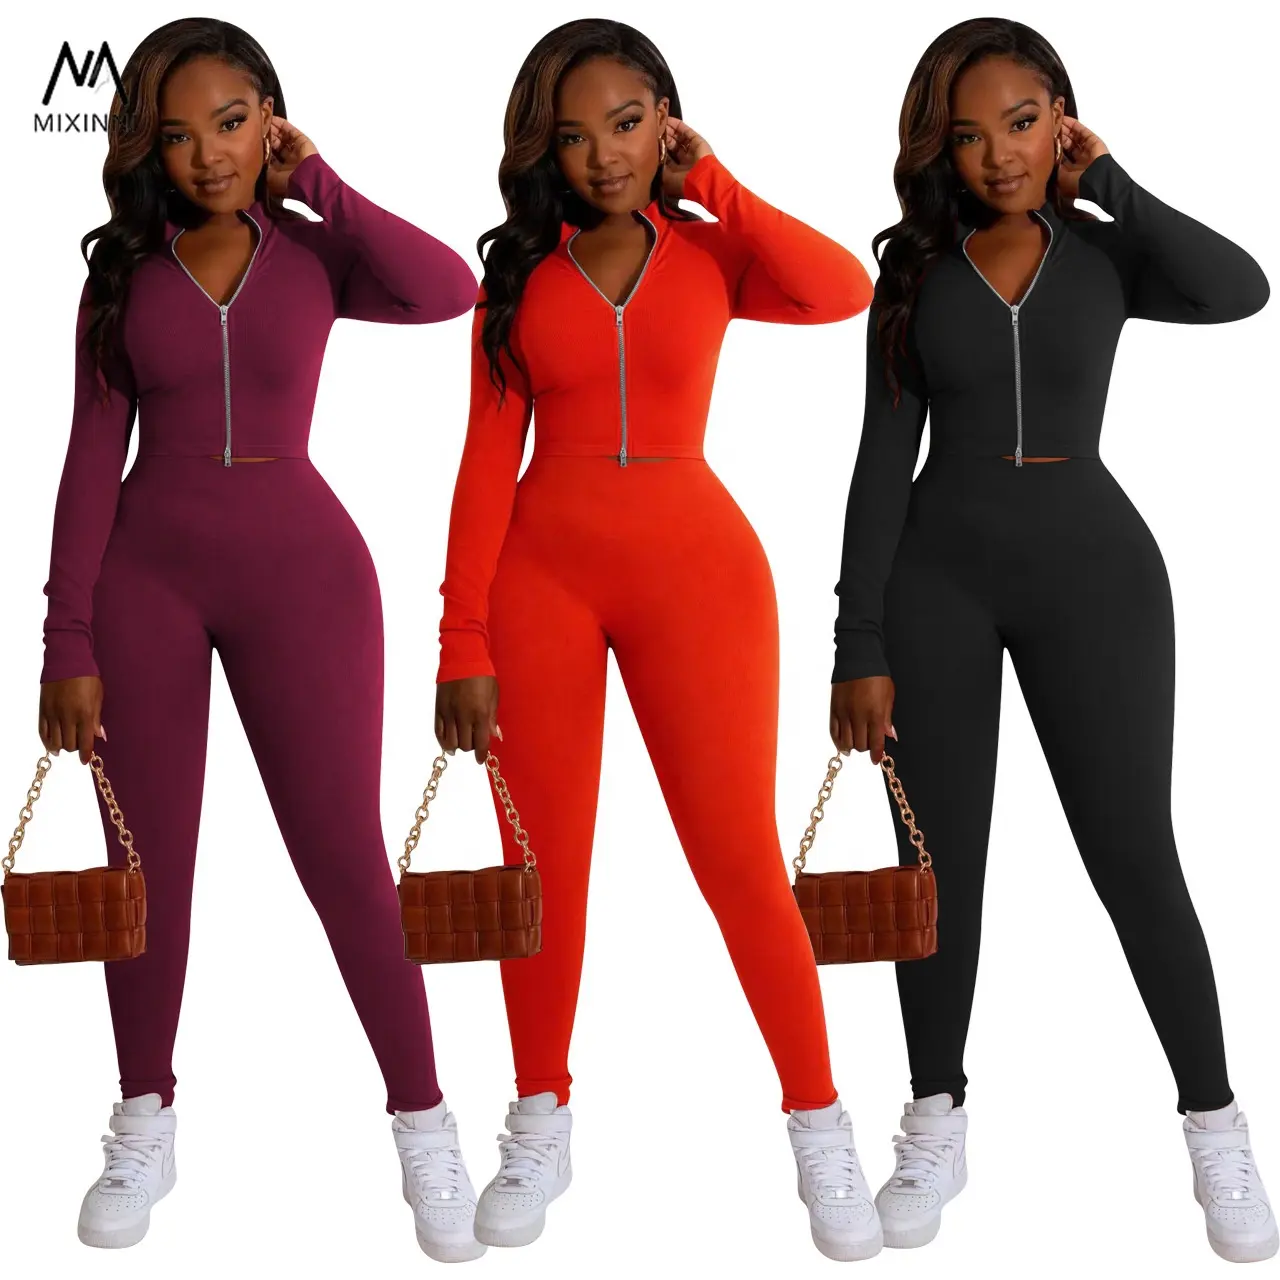 MXN 253 Solid color double zipper two piece set,hot sale casual women suits,sportswear ladies 2 piece set women